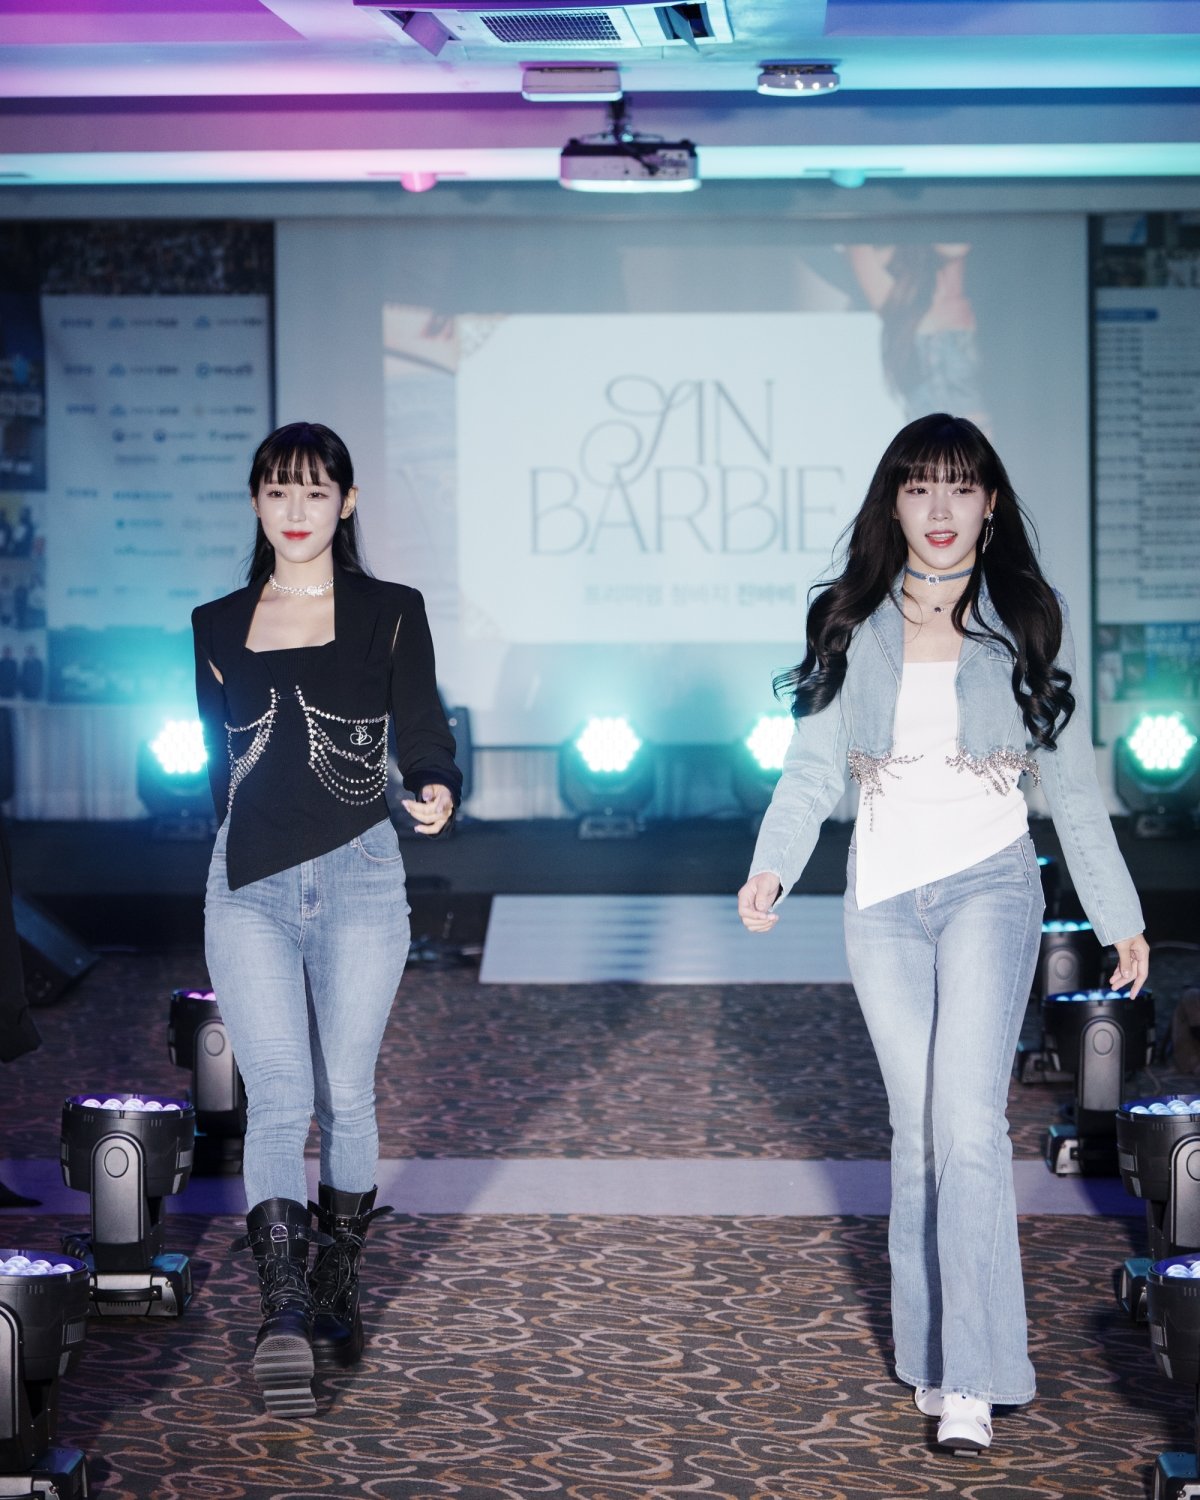 걸그룹 원츄(1CHU)가 진바비 패션쇼에서 패션과 K-팝의 멋진 콜라보레이션 무대를 꾸몄다. 사진= 진바비 제공